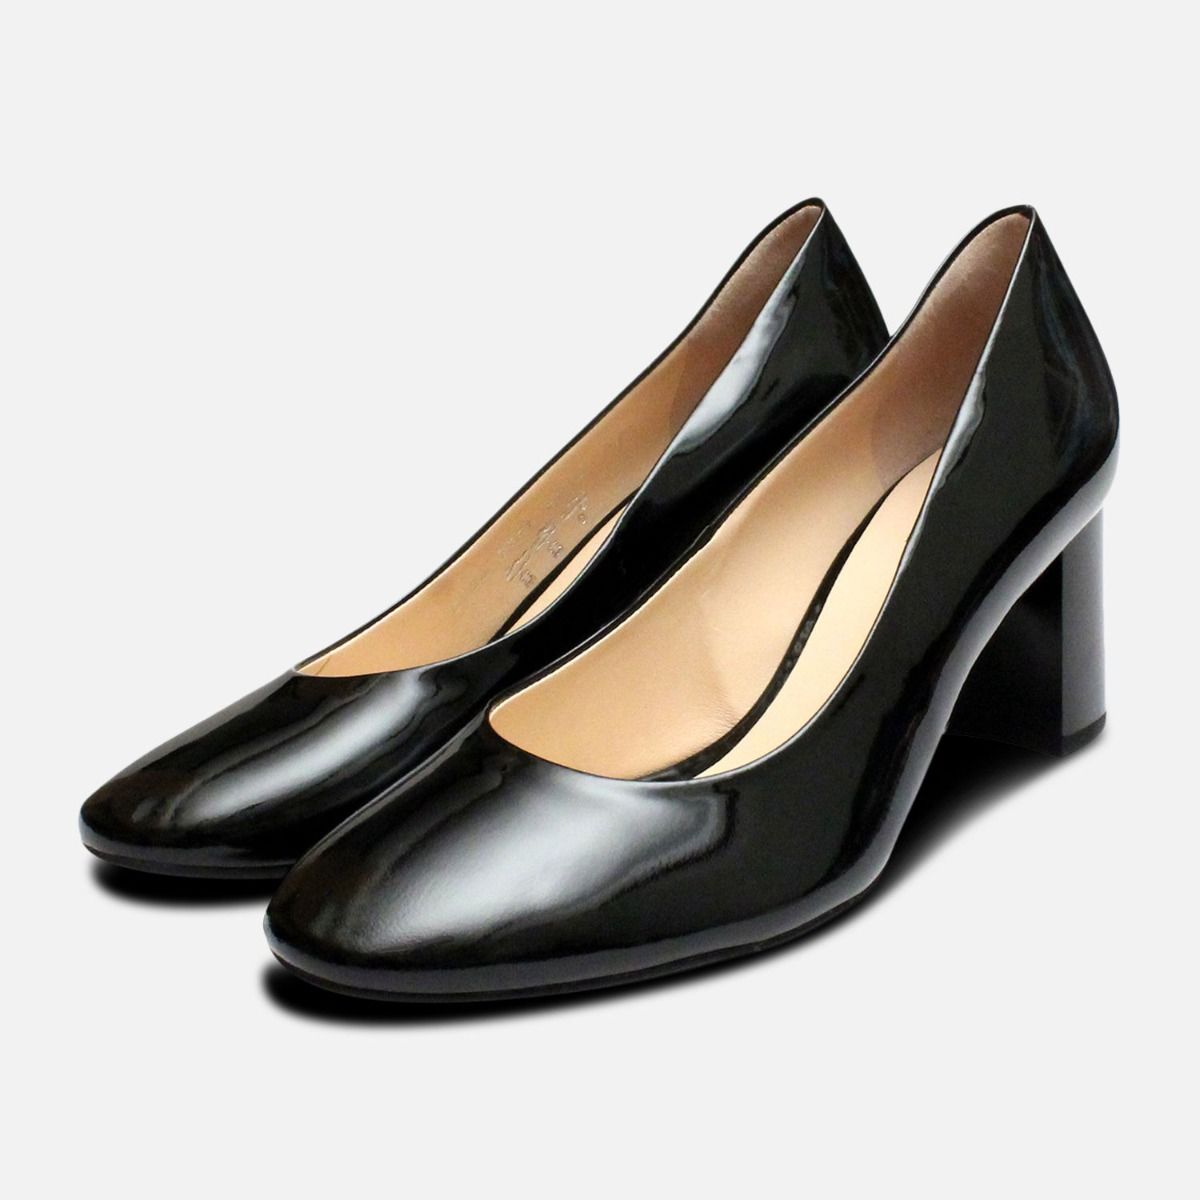 designer block heel shoes